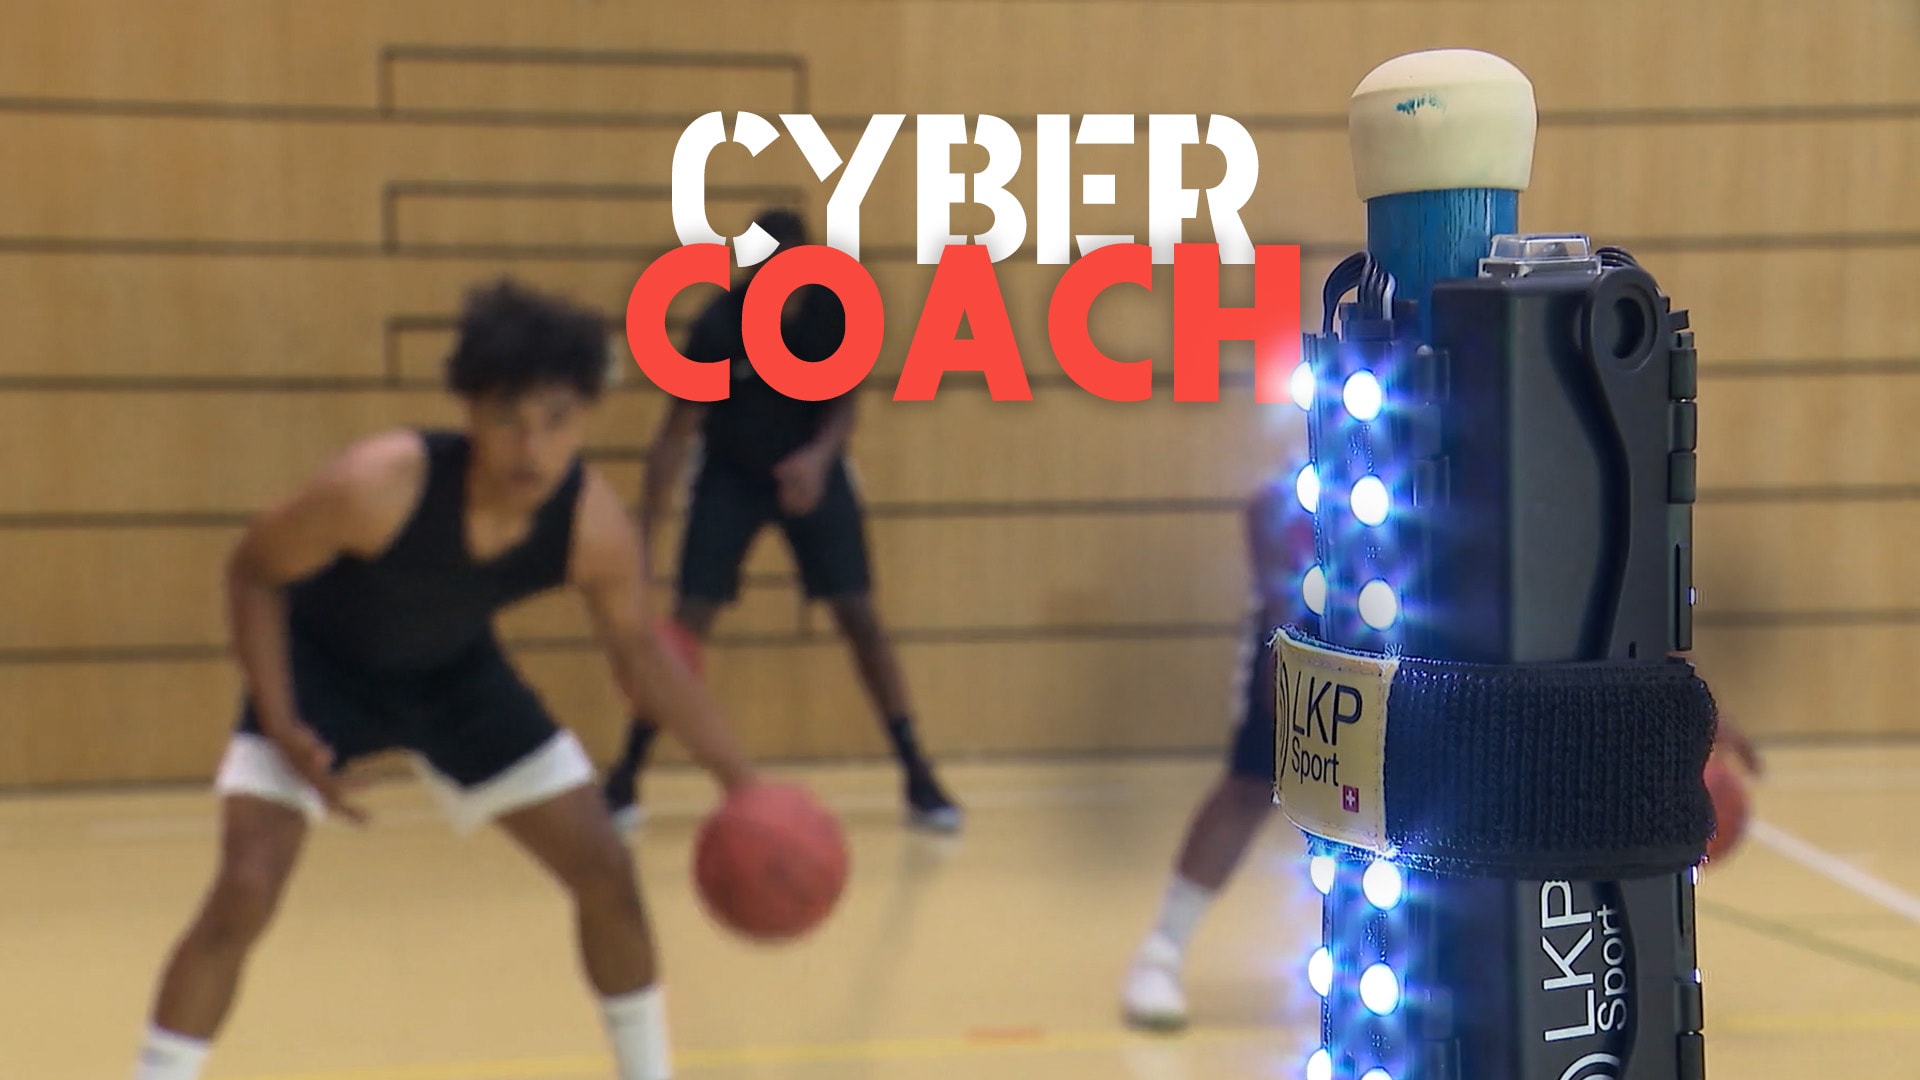 Cyber-coach